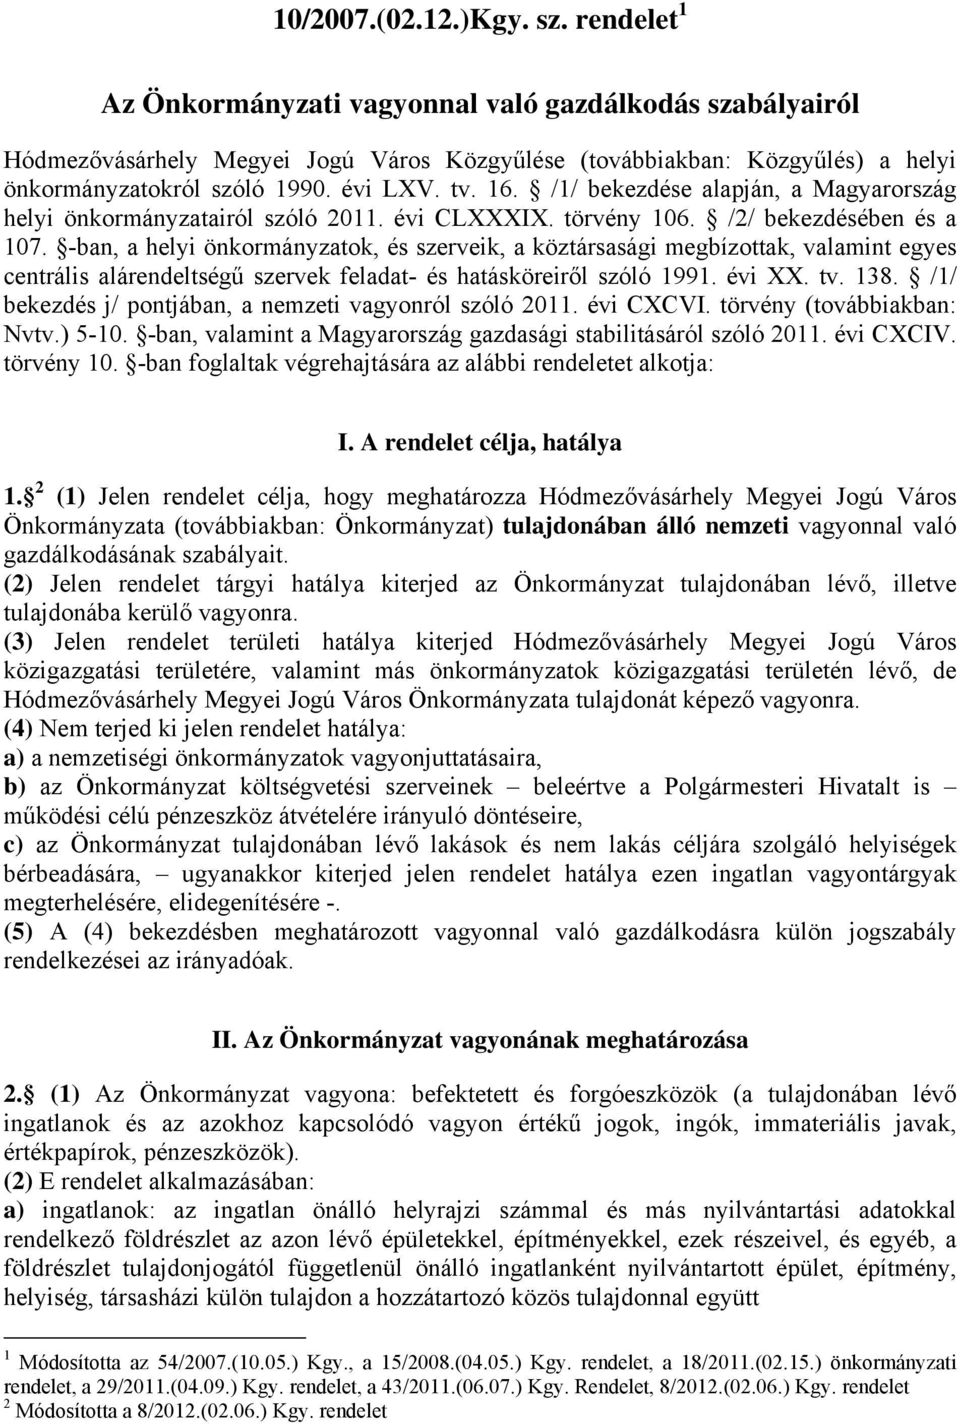 /1/ bekezdése alapján, a Magyarország helyi önkormányzatairól szóló 2011. évi CLXXXIX. törvény 106. /2/ bekezdésében és a 107.